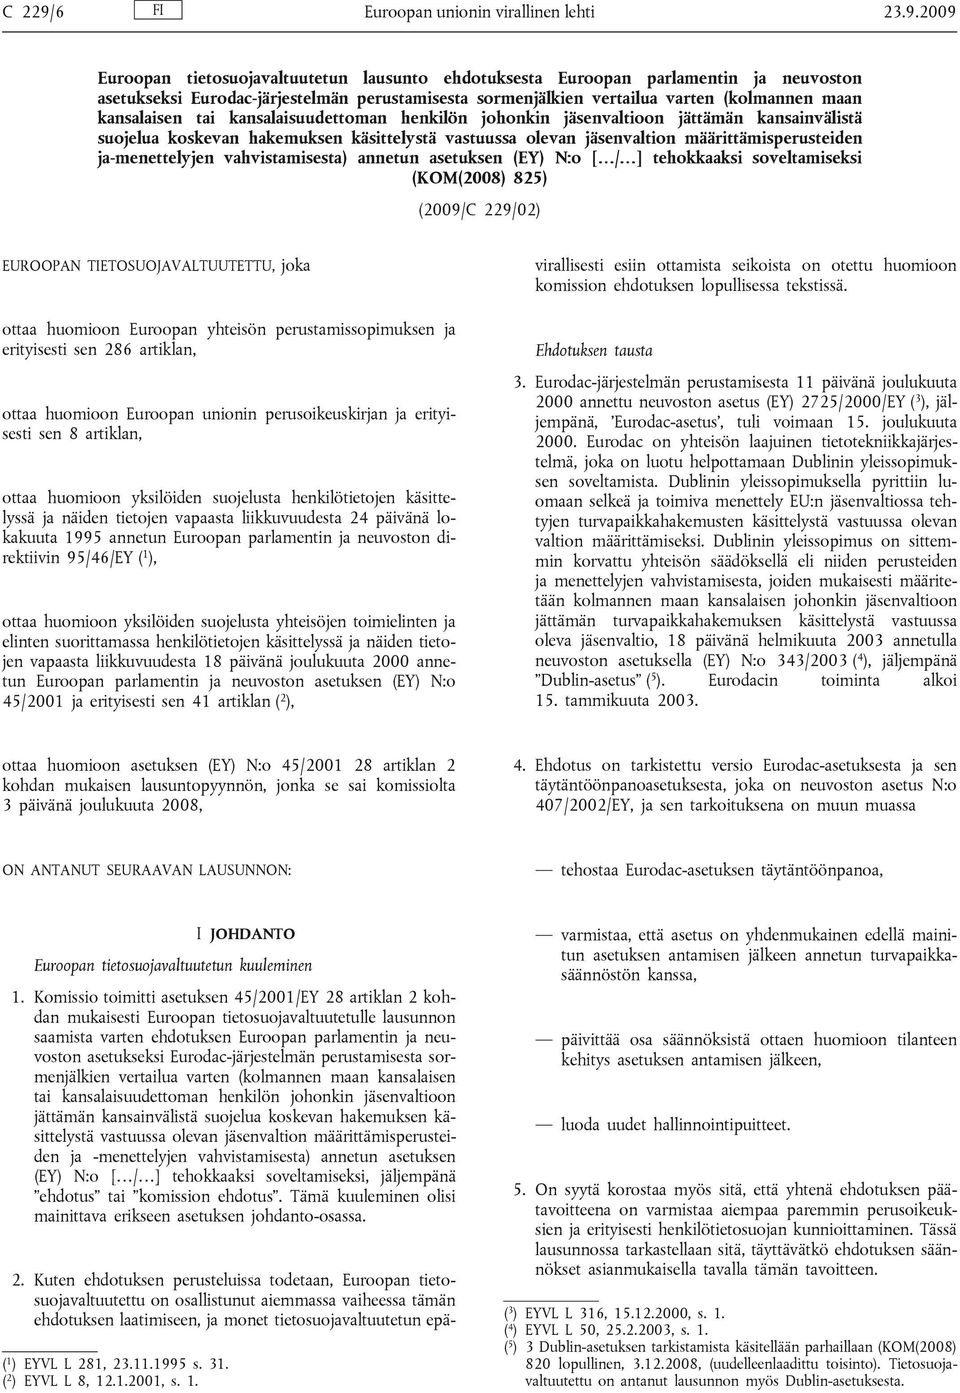 2009 Euroopan tietosuojavaltuutetun lausunto ehdotuksesta Euroopan parlamentin ja neuvoston asetukseksi Eurodac-järjestelmän perustamisesta sormenjälkien vertailua varten (kolmannen maan kansalaisen